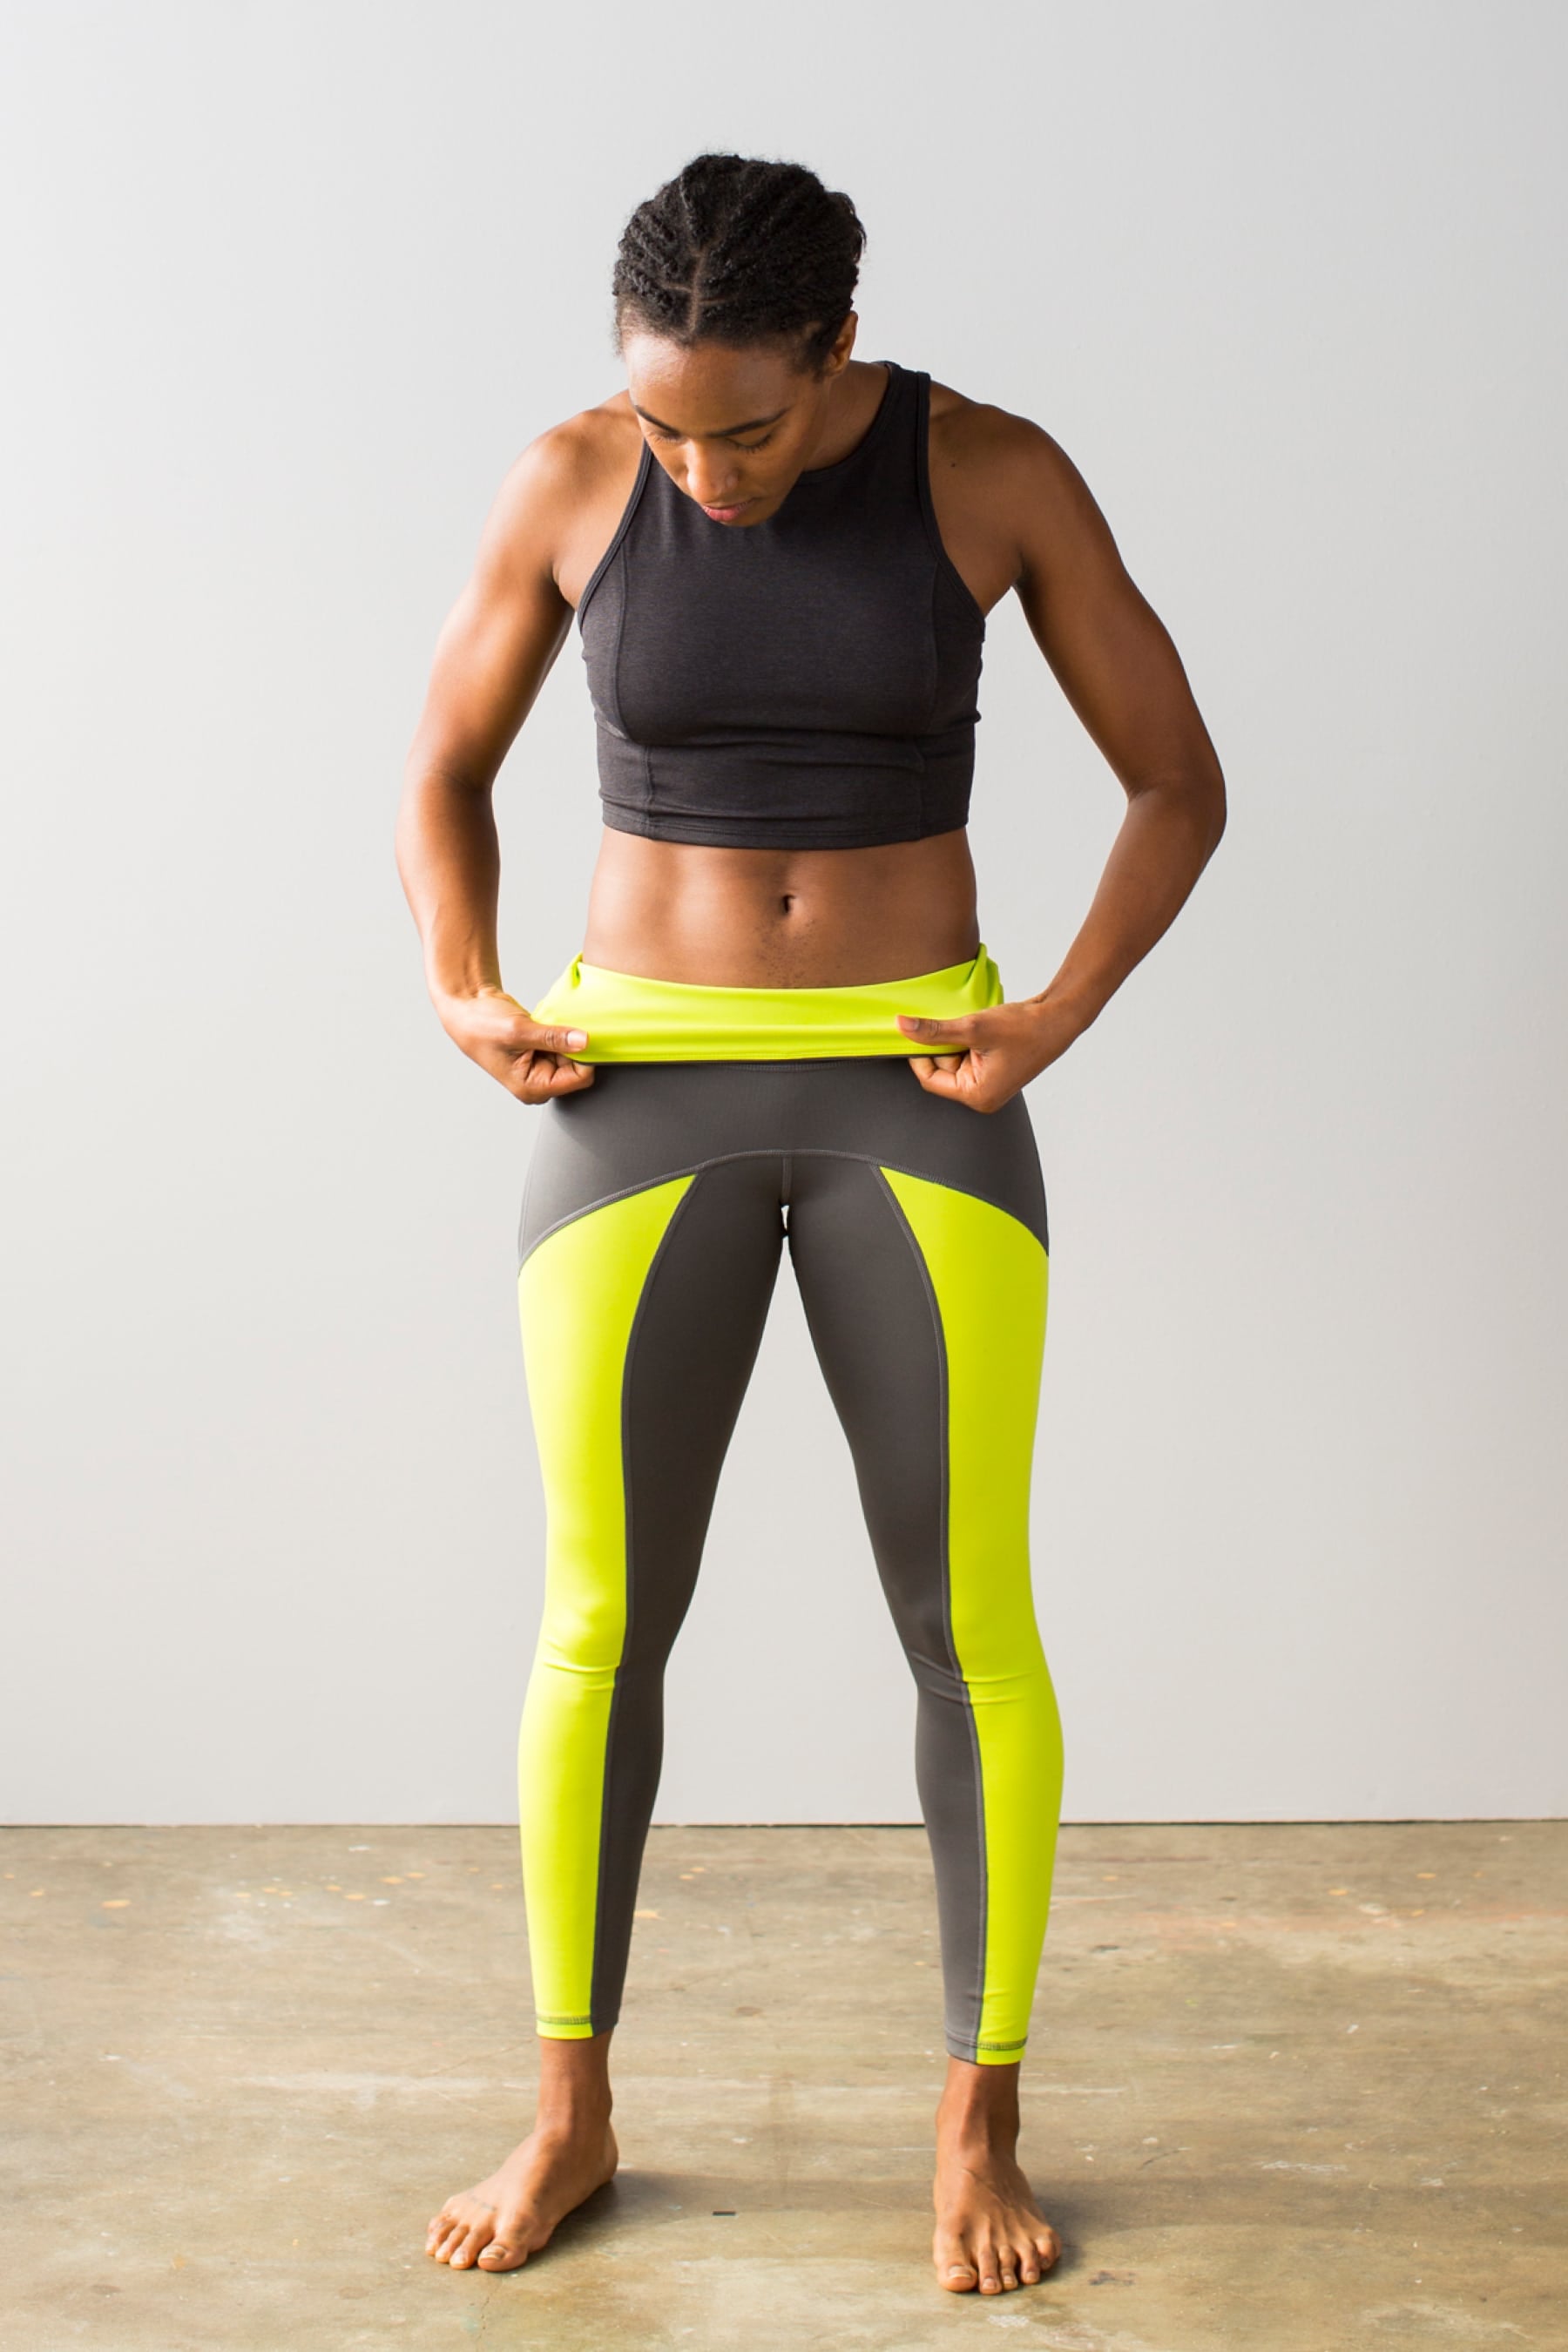 Veil, a New Modest Activewear Line, Has Legs on Kickstarter